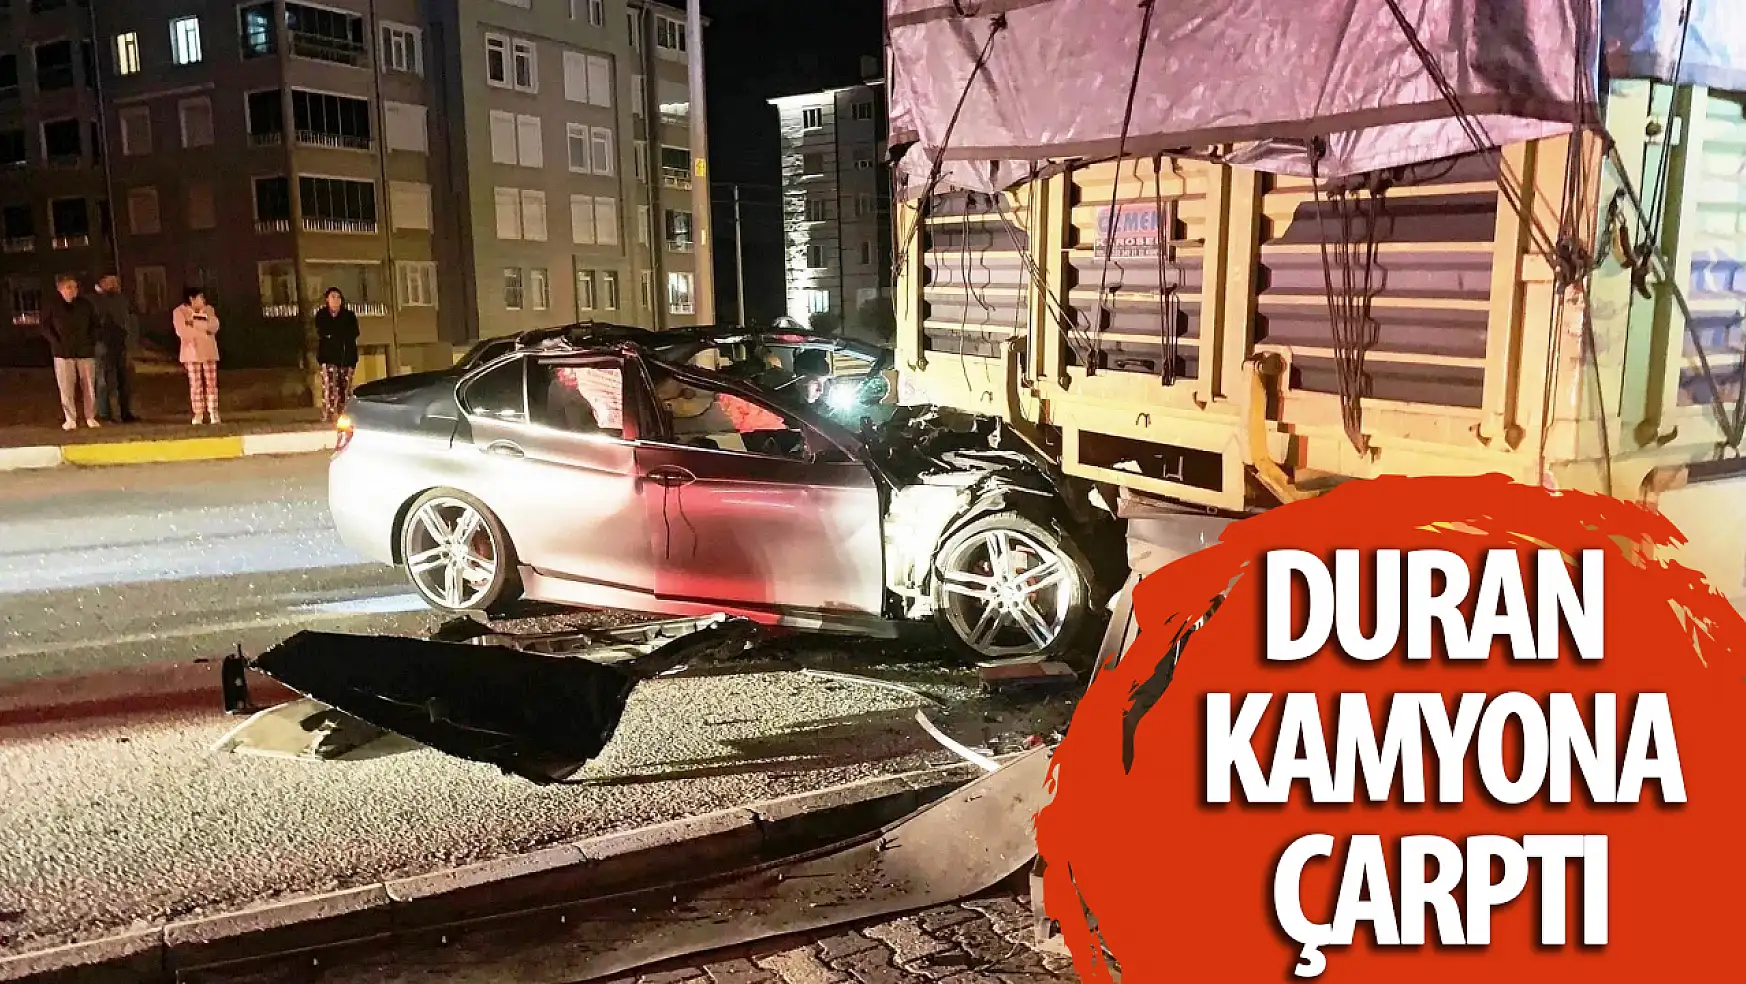 Konya'da bir otomobil duran kamyona çarptı: 2 yaralı